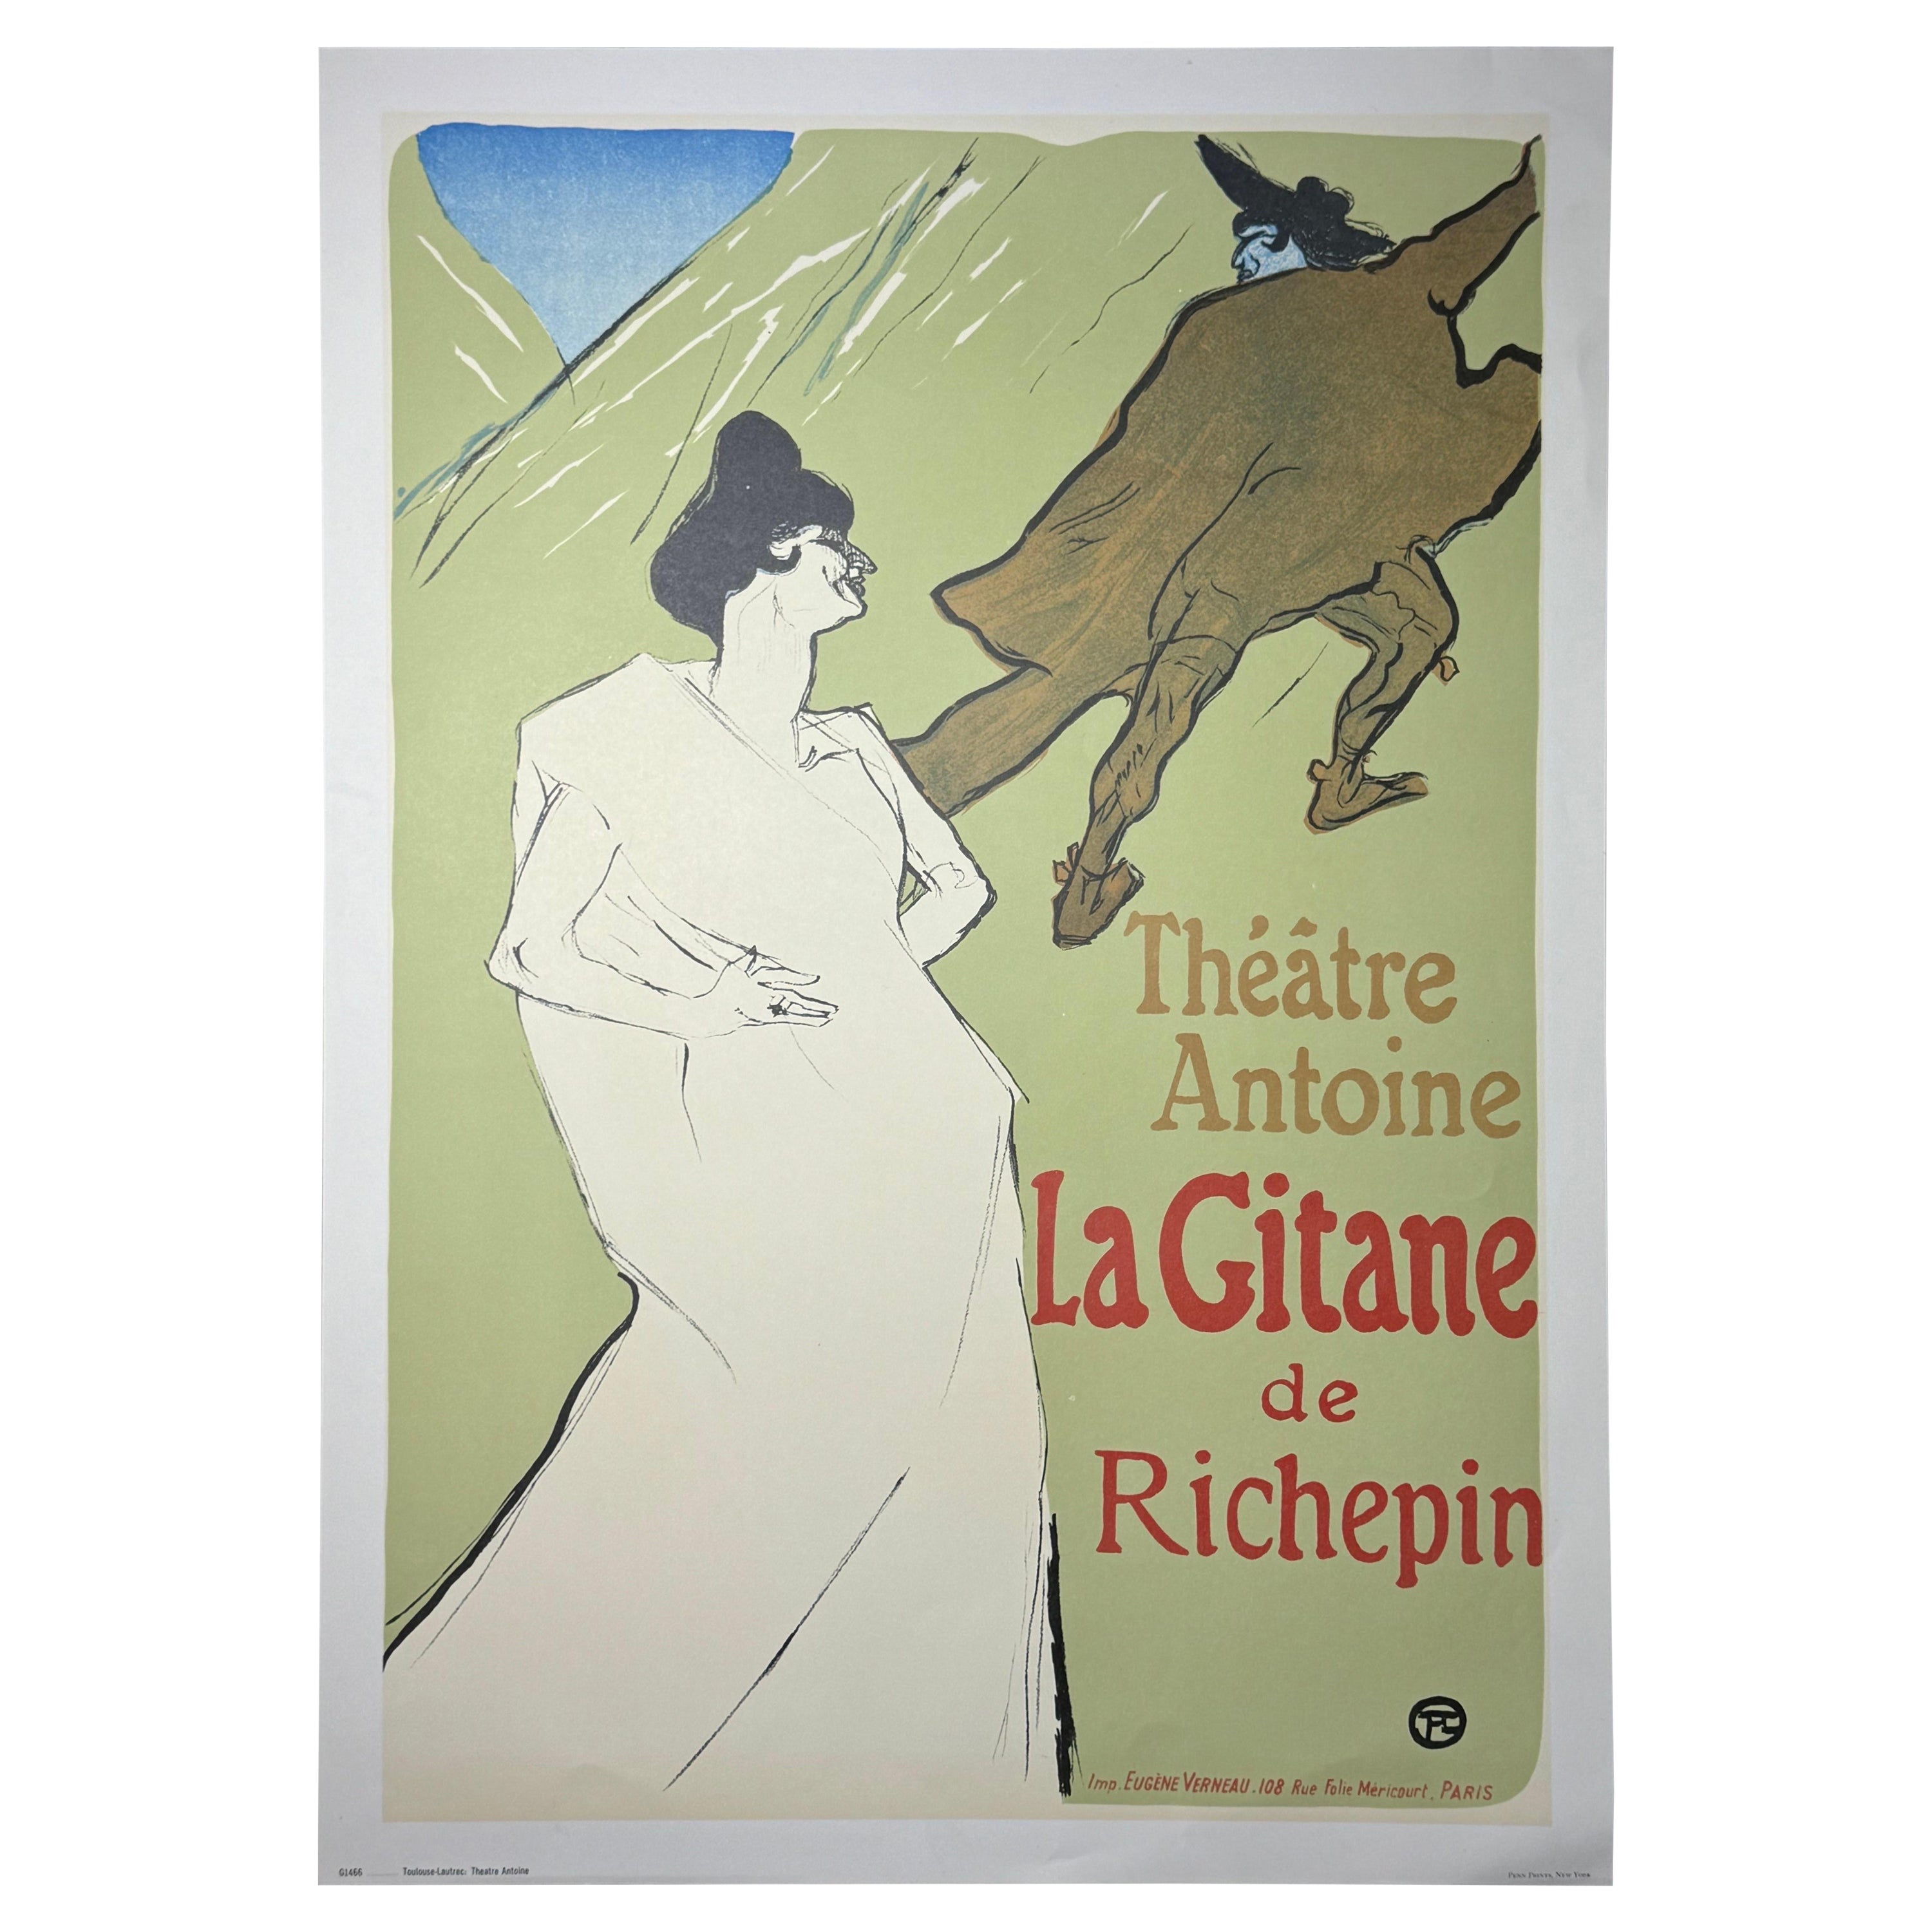 Henri de Toulouse Lautrec "Theatre Antoine, La Gitane de Richepin" imprimé vintage